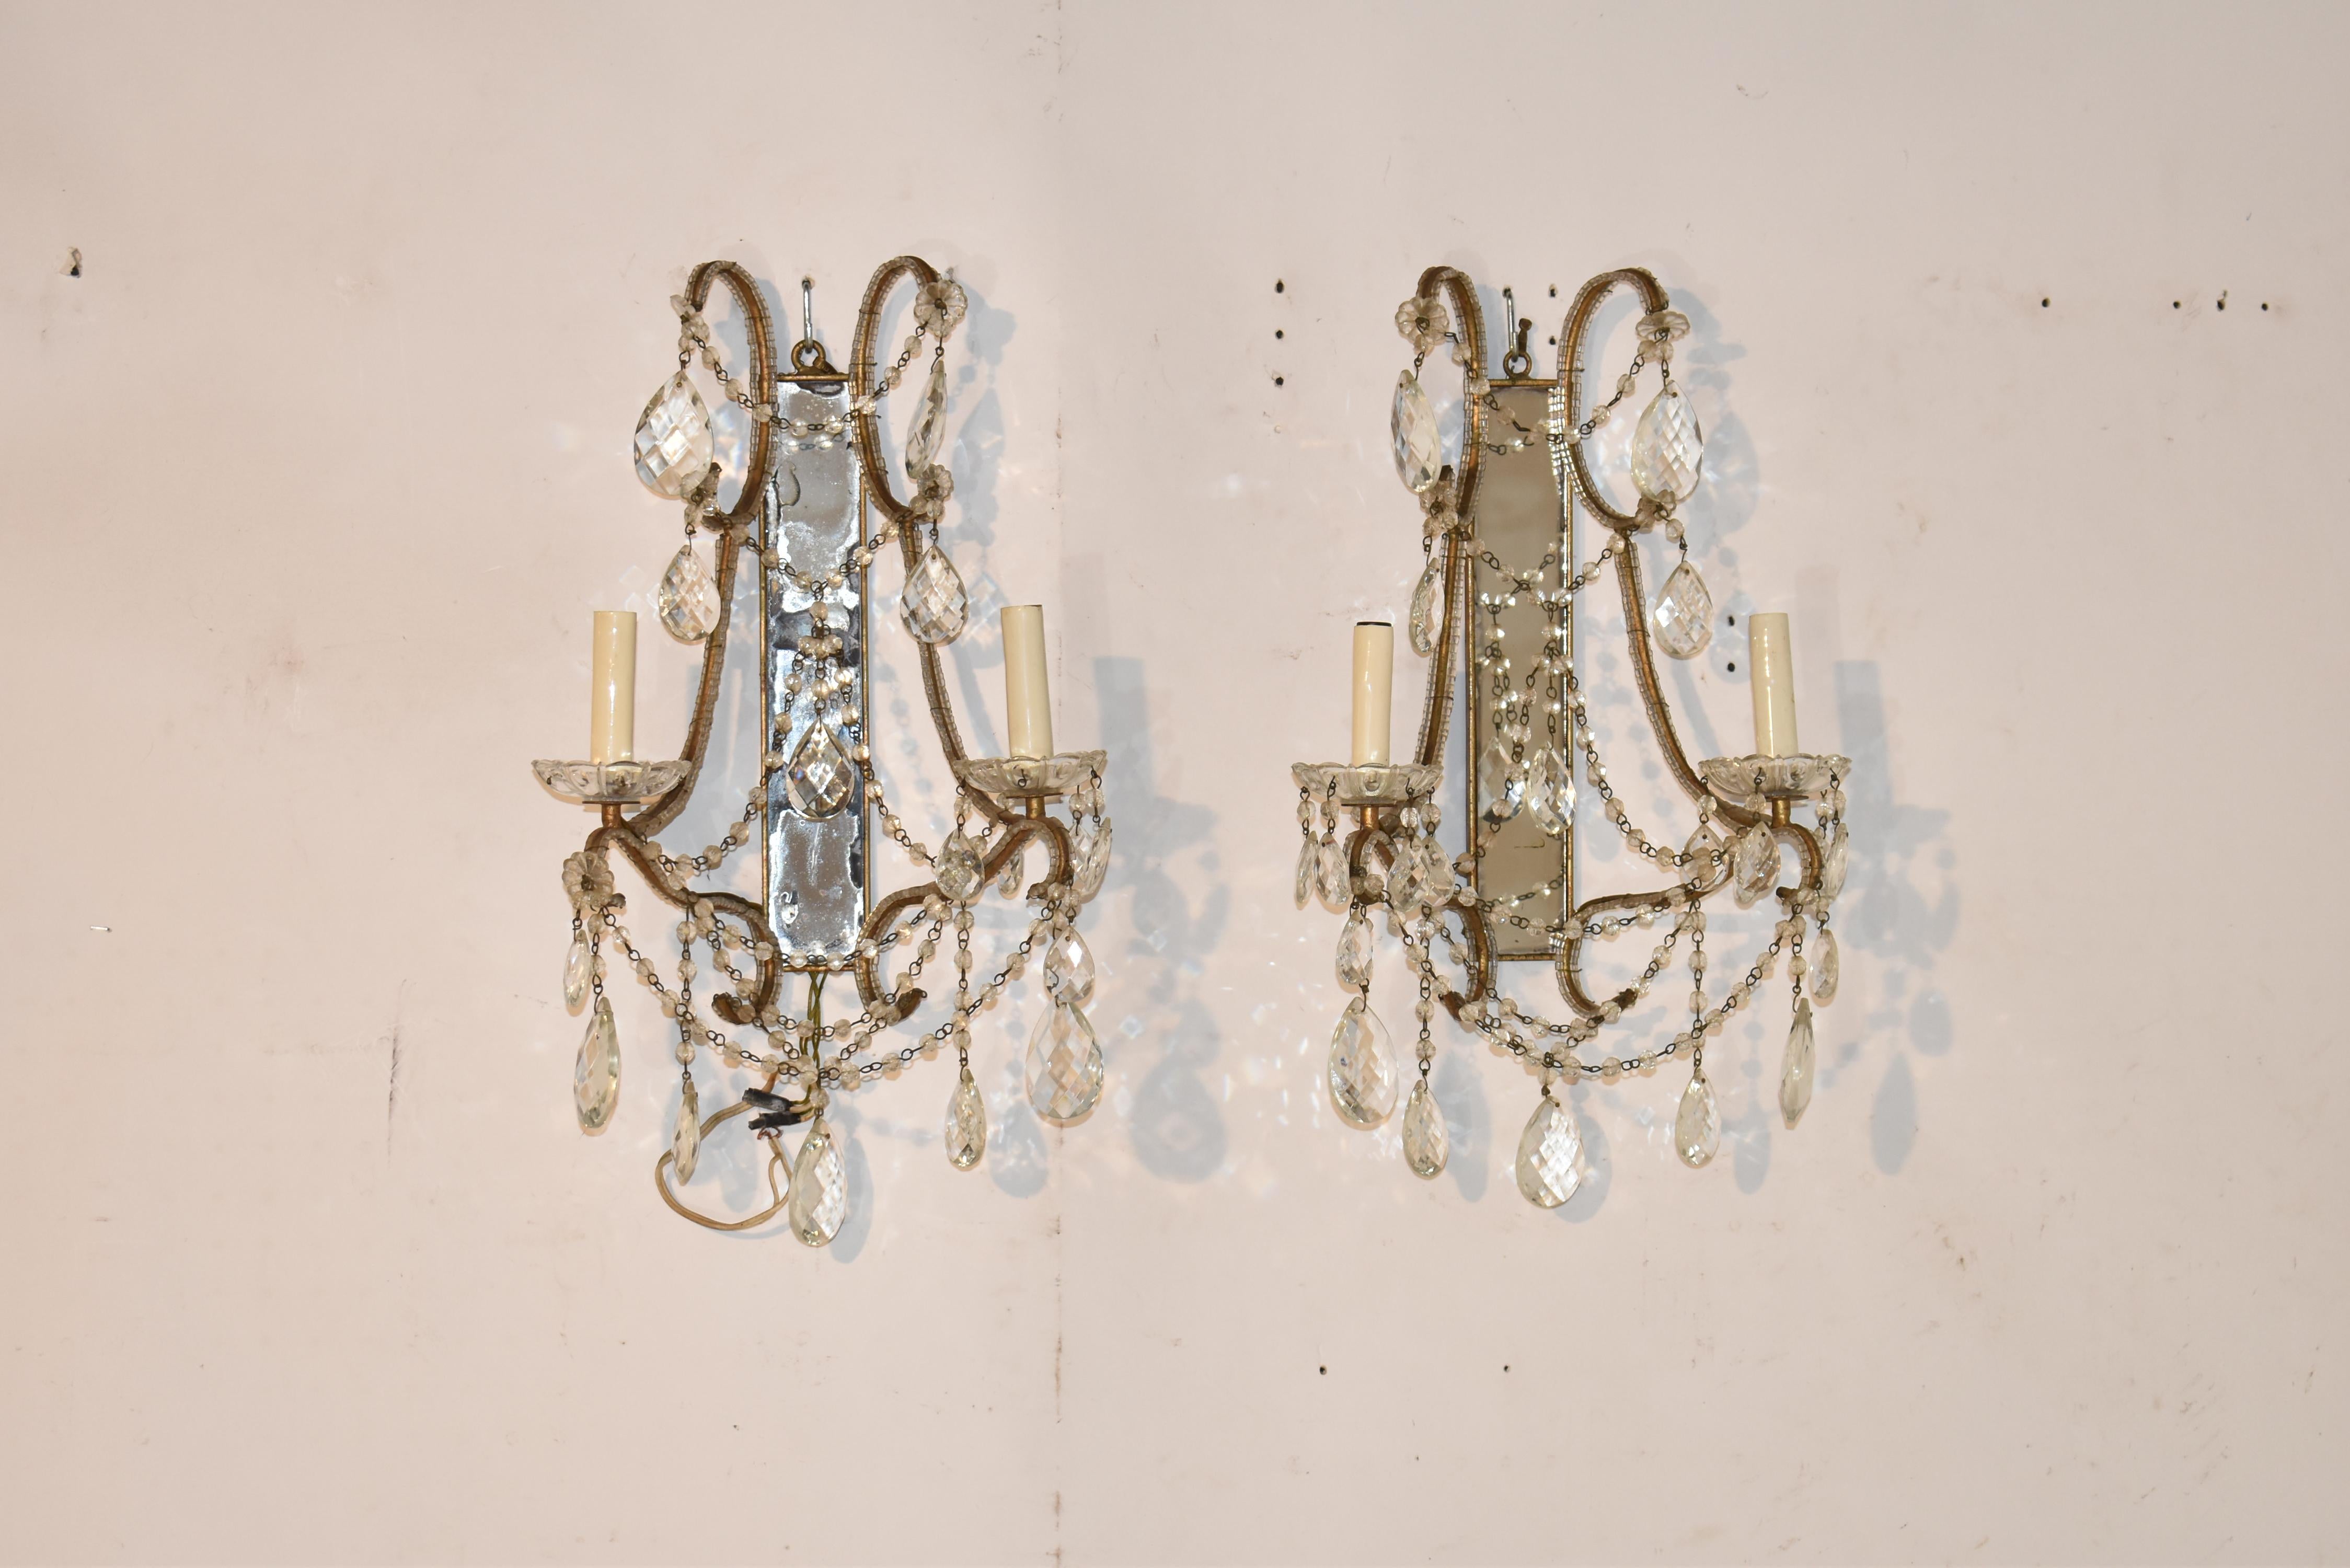 Wunderschönes Paar verspiegelter Wandleuchter mit zwei Armen, die durch anmutige Glasperlenketten verbunden sind und mit hängenden, facettierten Kristalltropfen verziert sind.  Die beiden Arme mit jeweils einer einzelnen Kerze ruhen auf Glasbögen. 